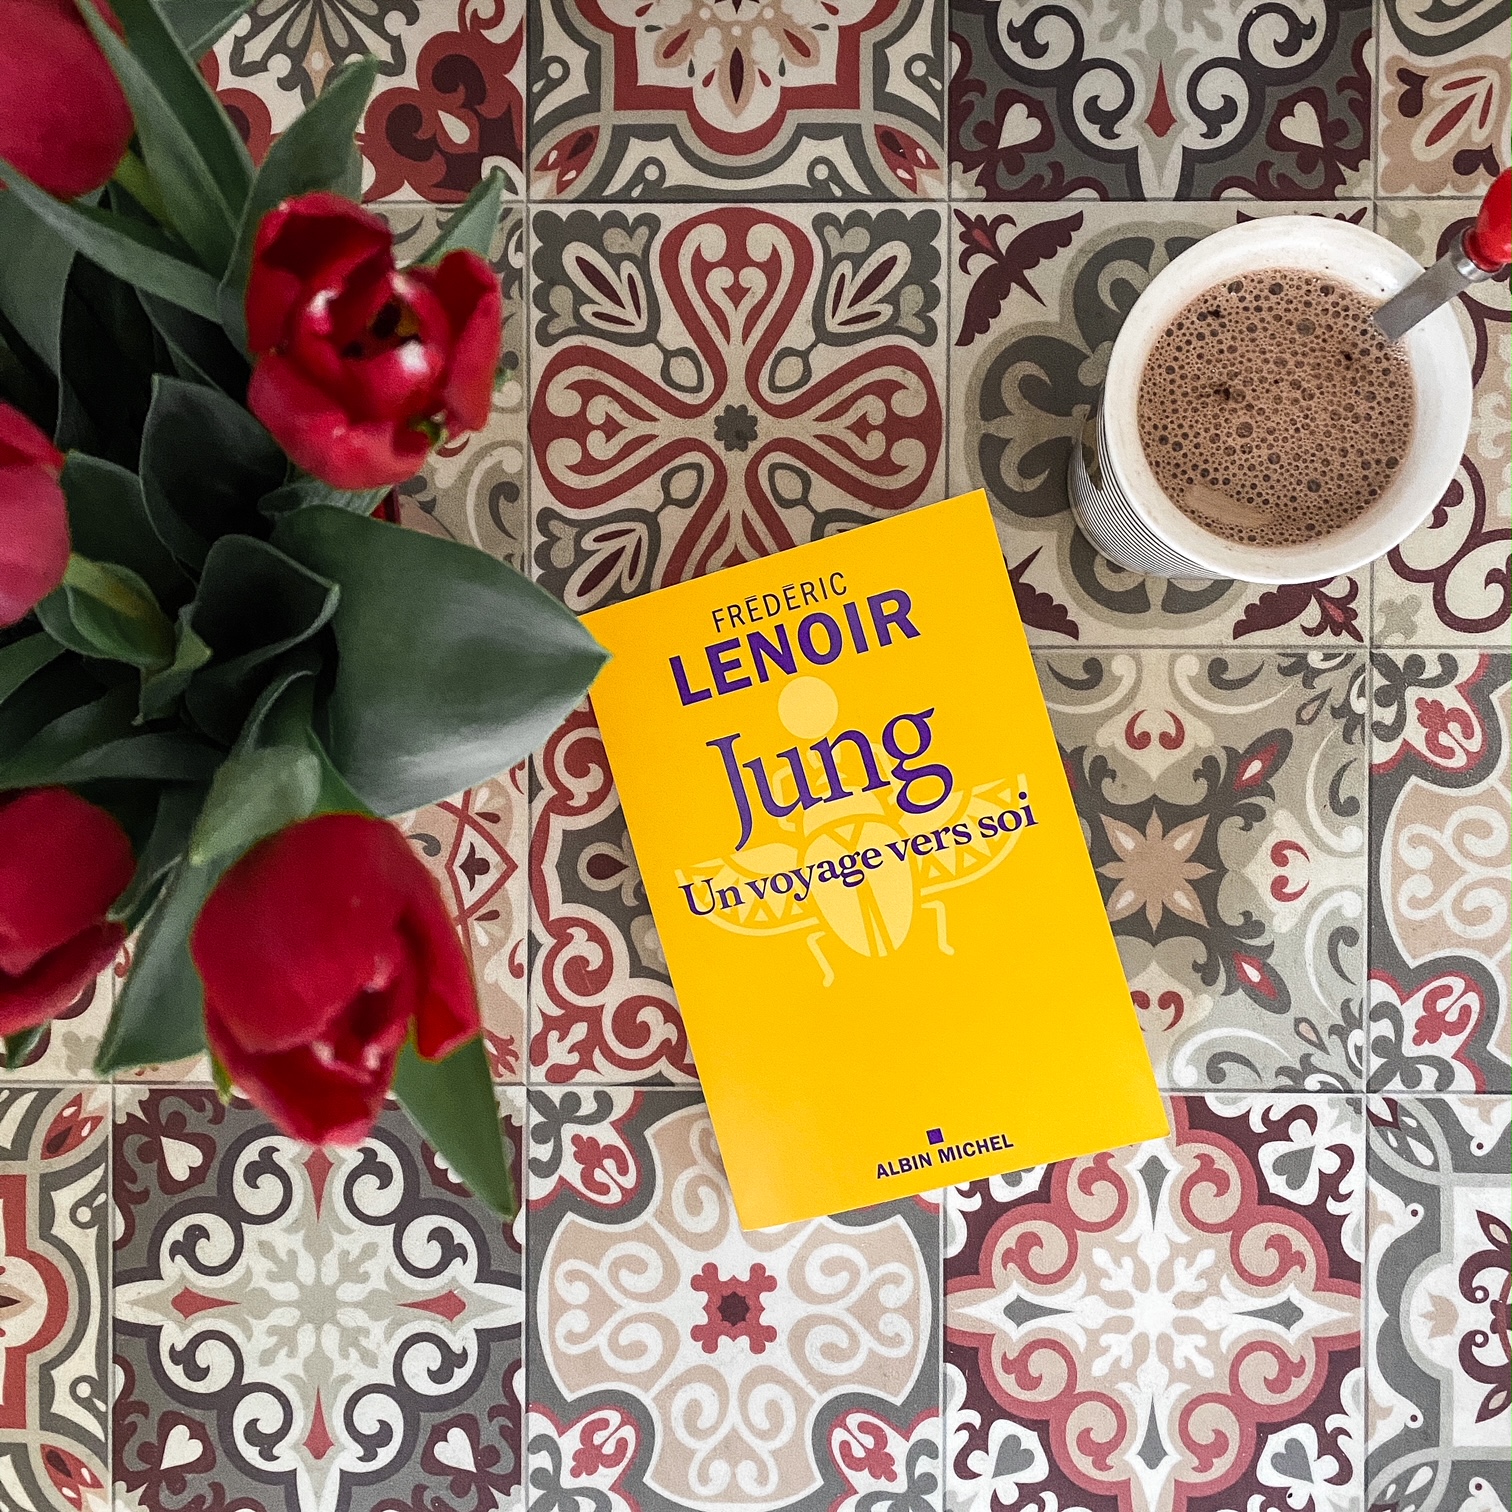 Jung, un voyage vers soi de Frédéric Lenoir : une vie